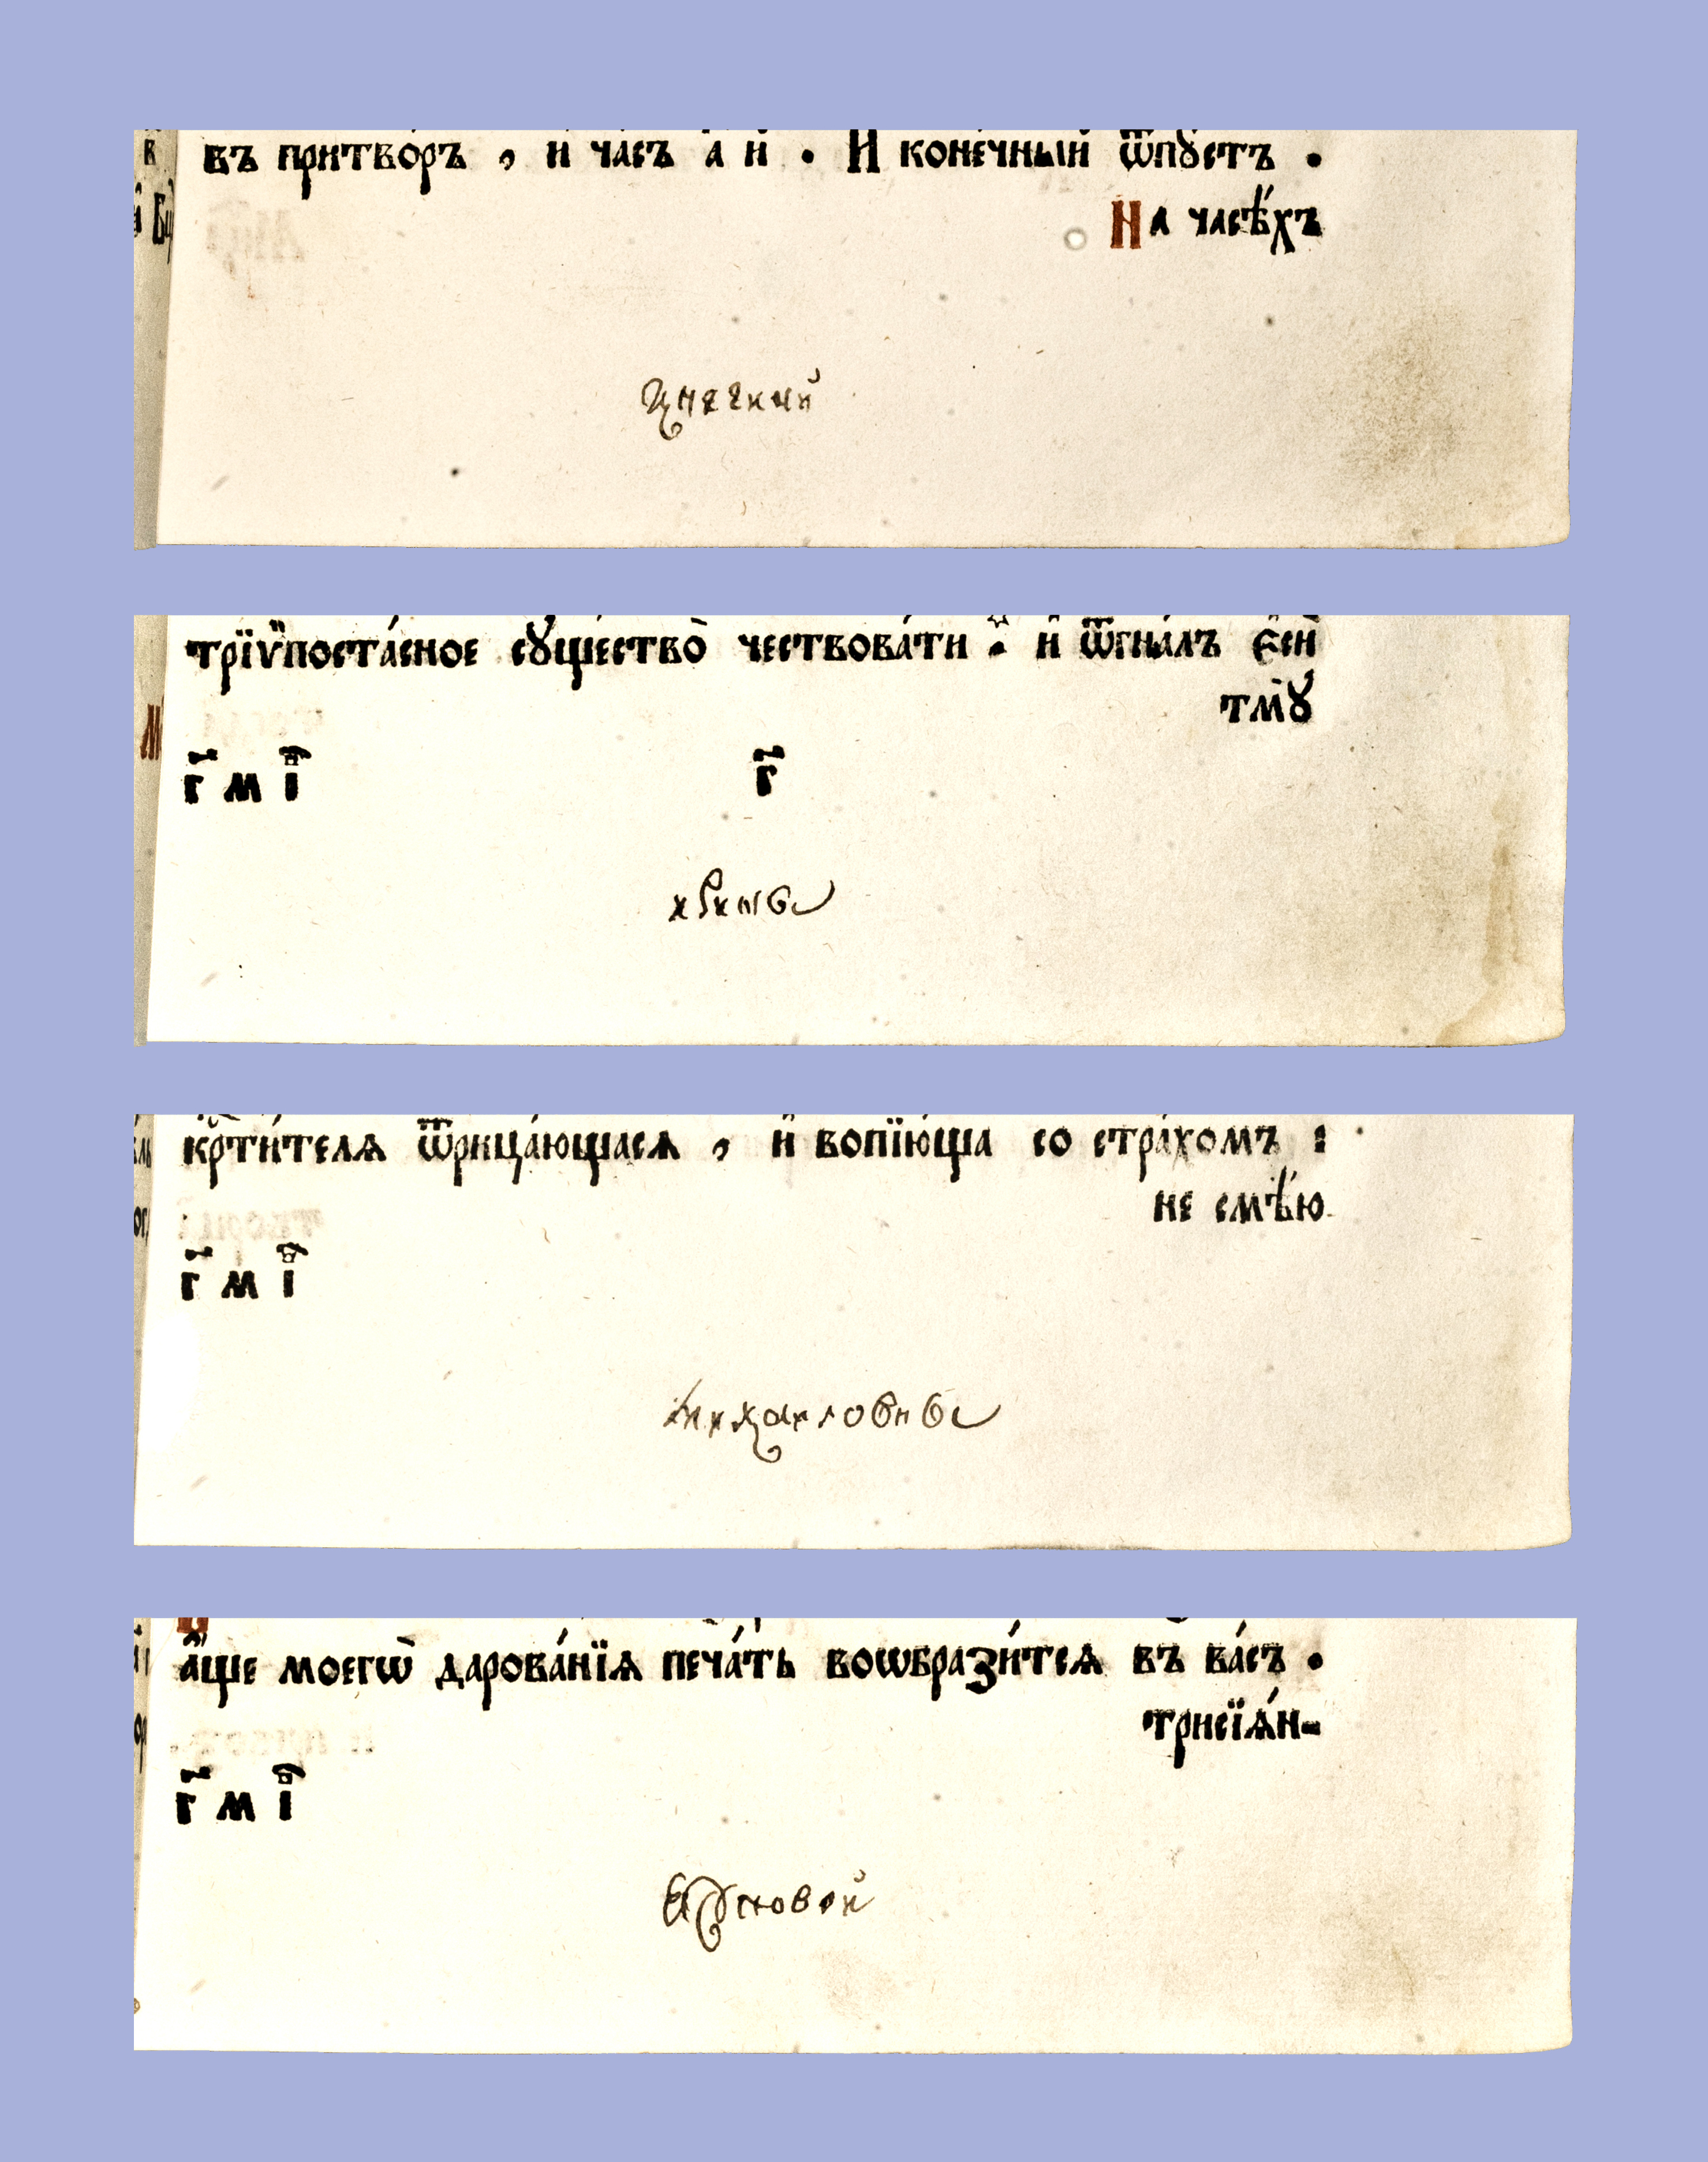 31.XII. Фрагмент записи 1777 г. о покупке книги в вотчину княгини И.М. Юсуповой (л. 21-24)